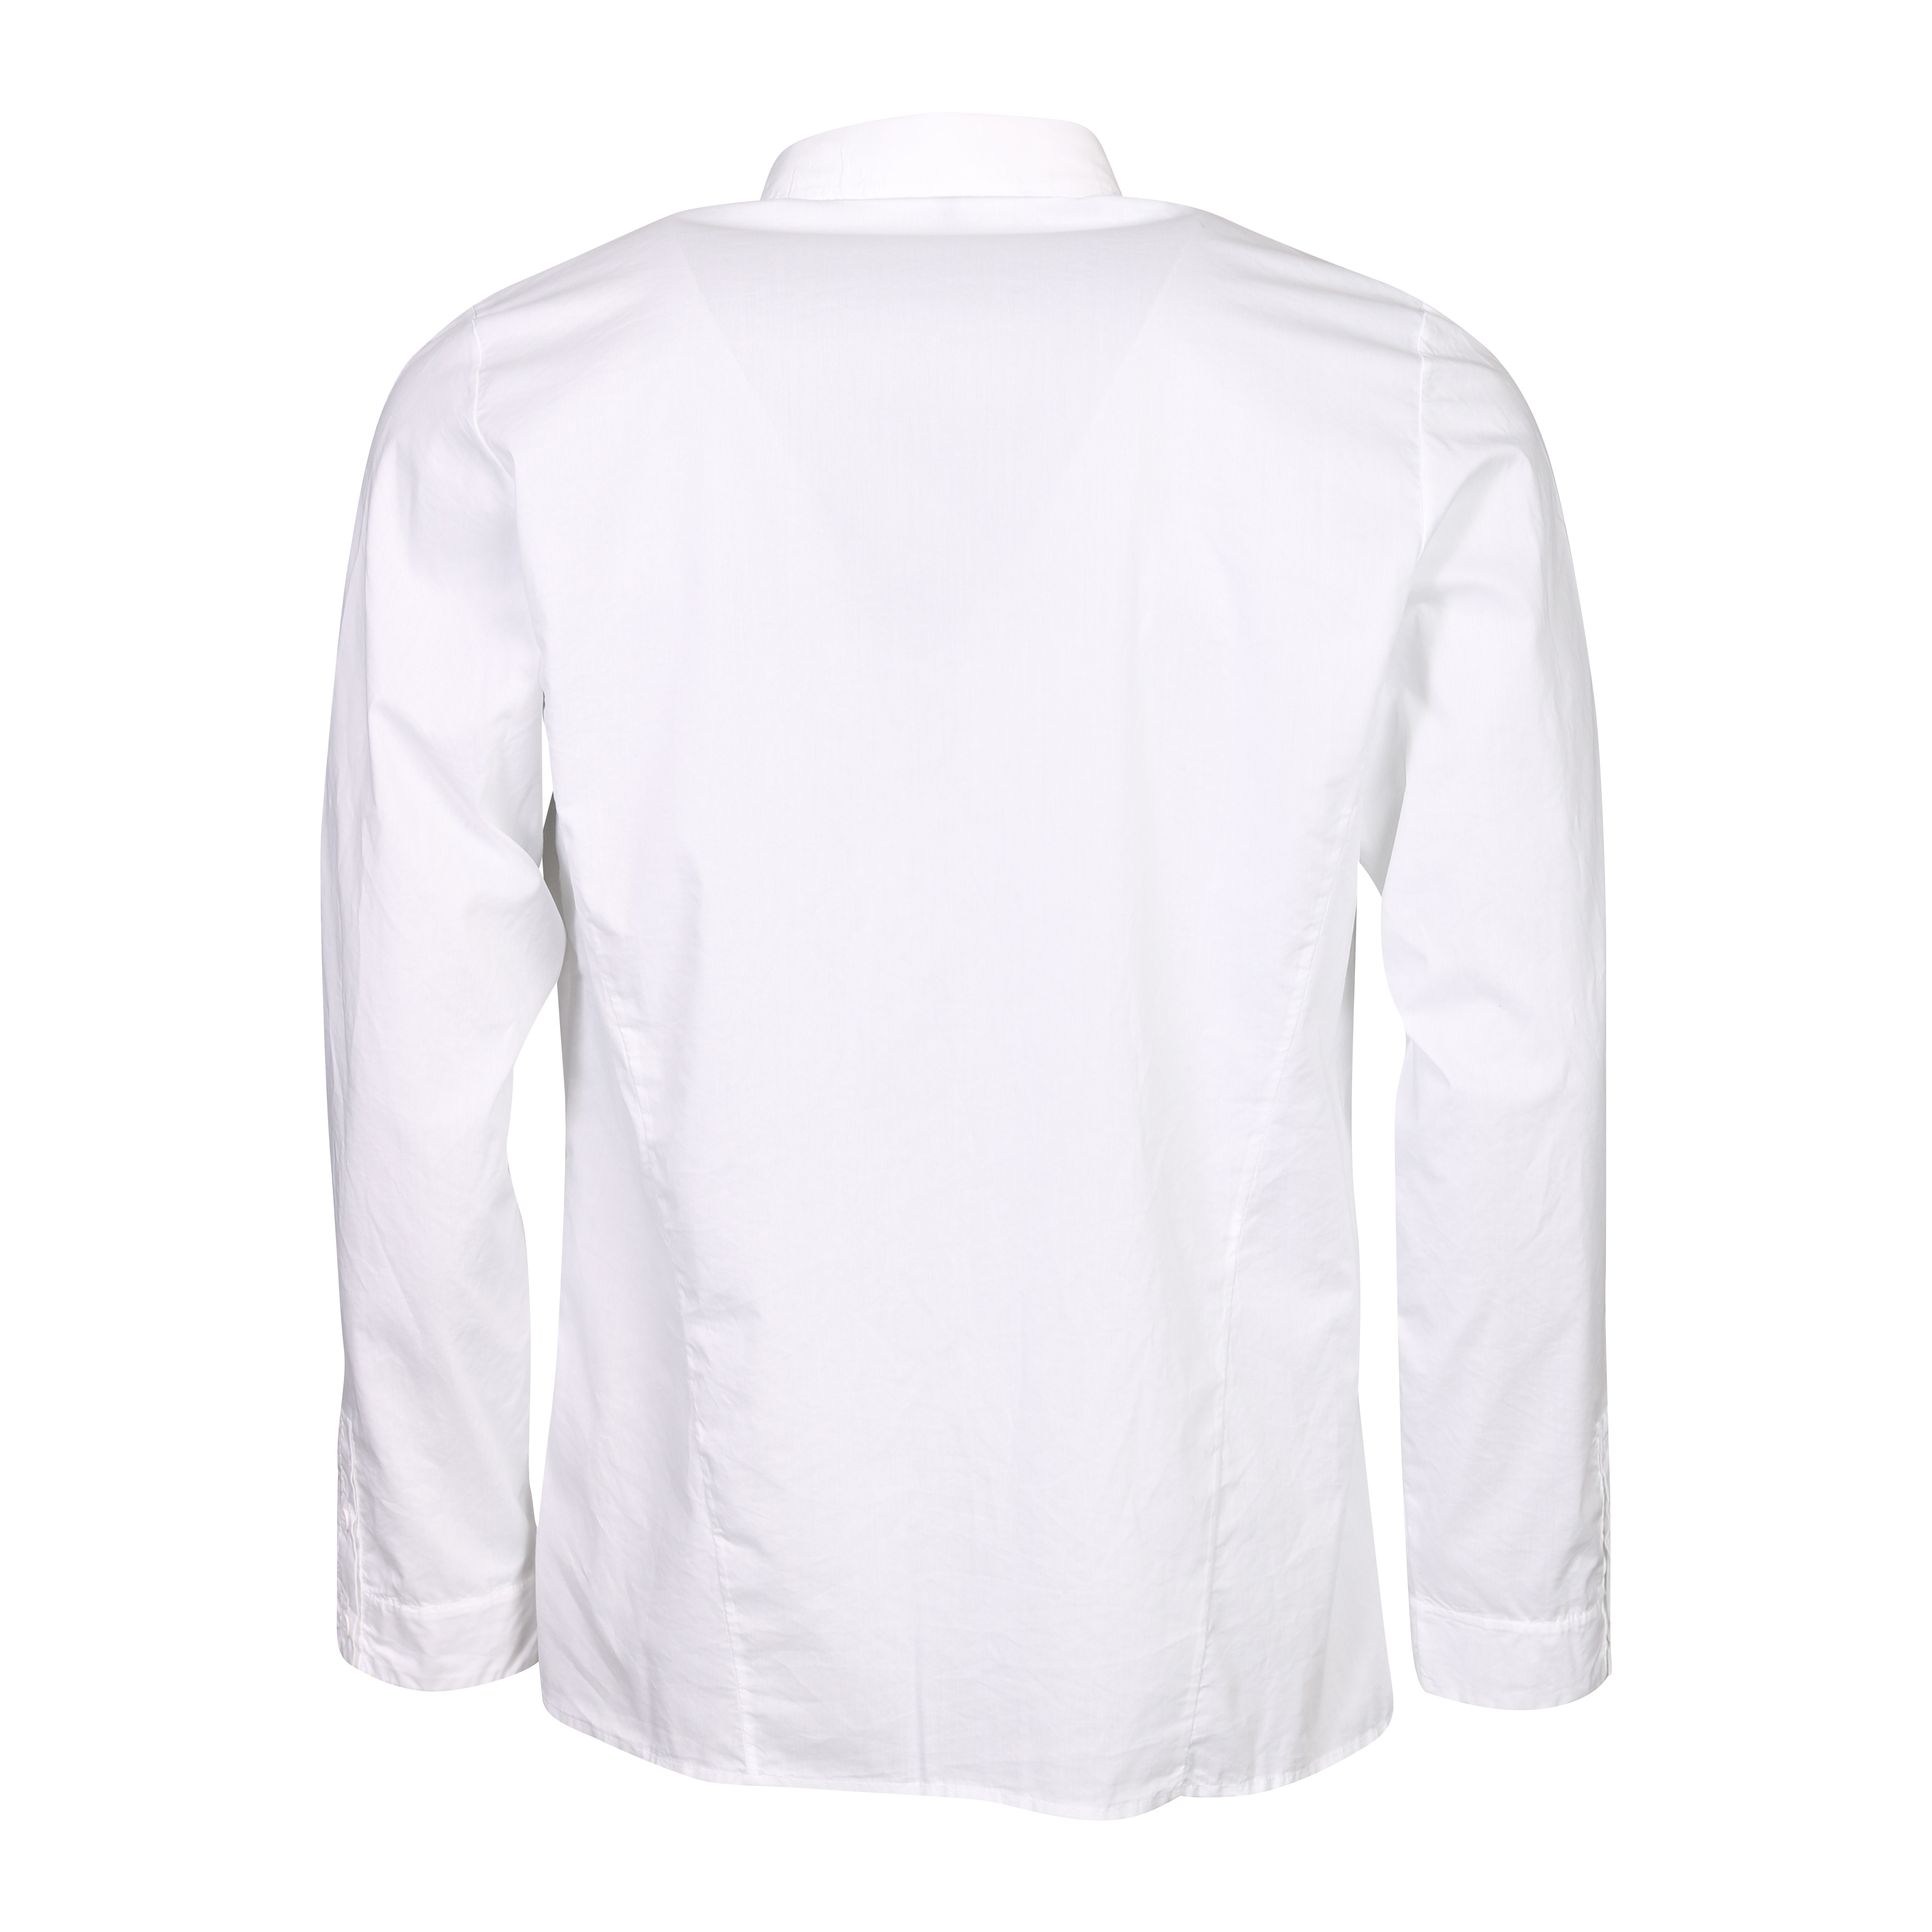 Transit Uomo Cotton Shirt in White L